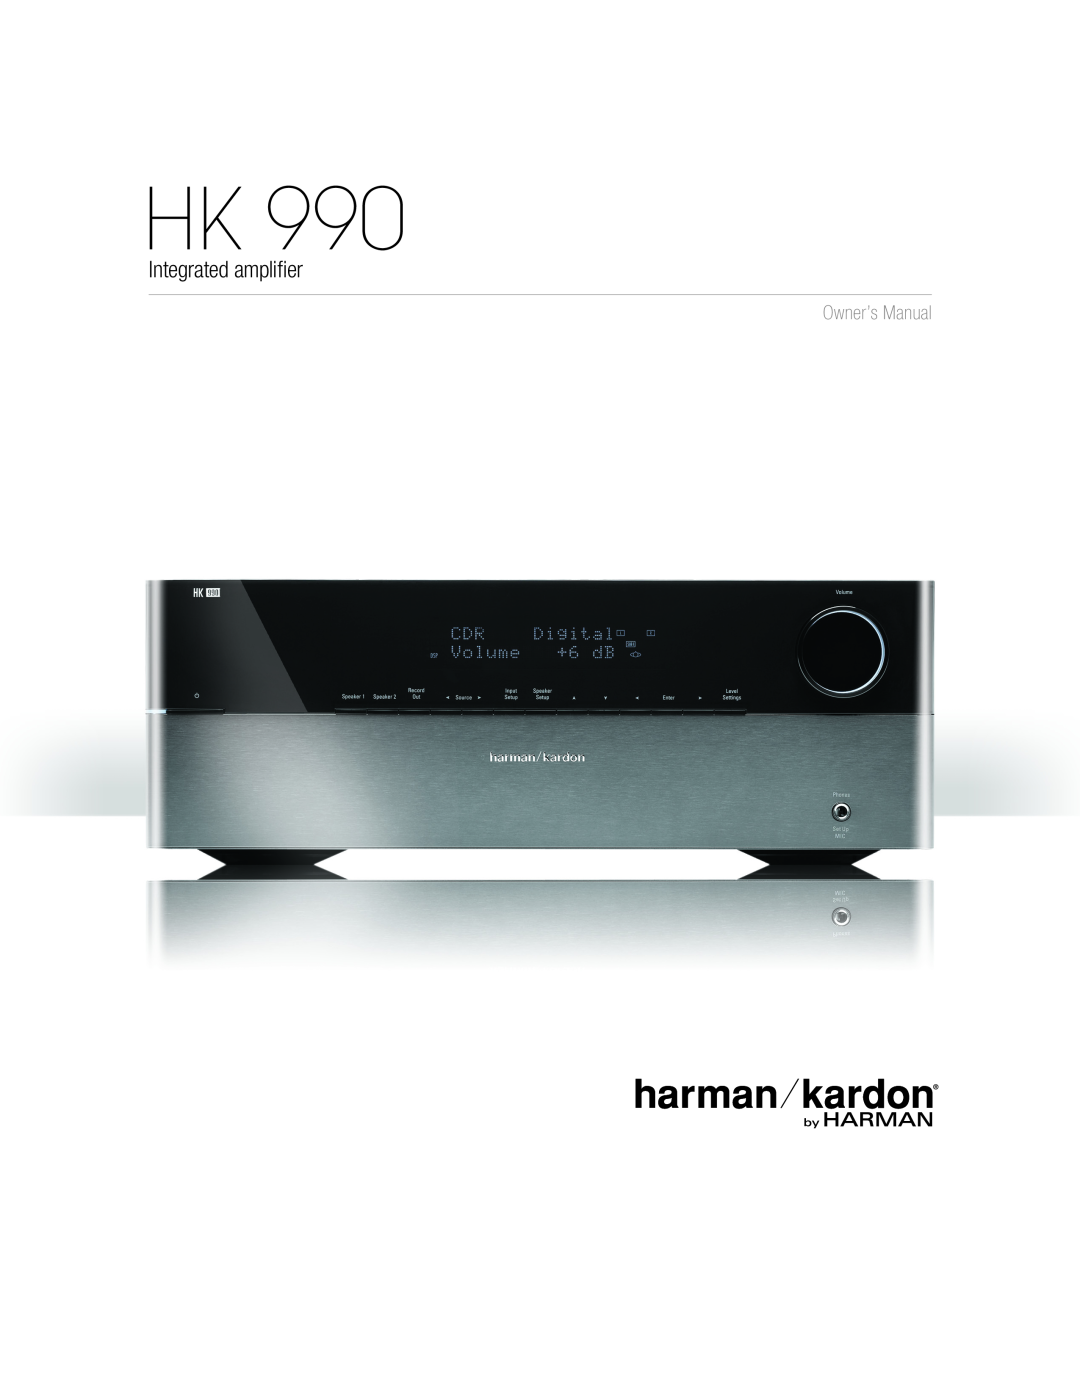 Harman HK 990 owner manual Integrated amplifier, Owner’s Manual 